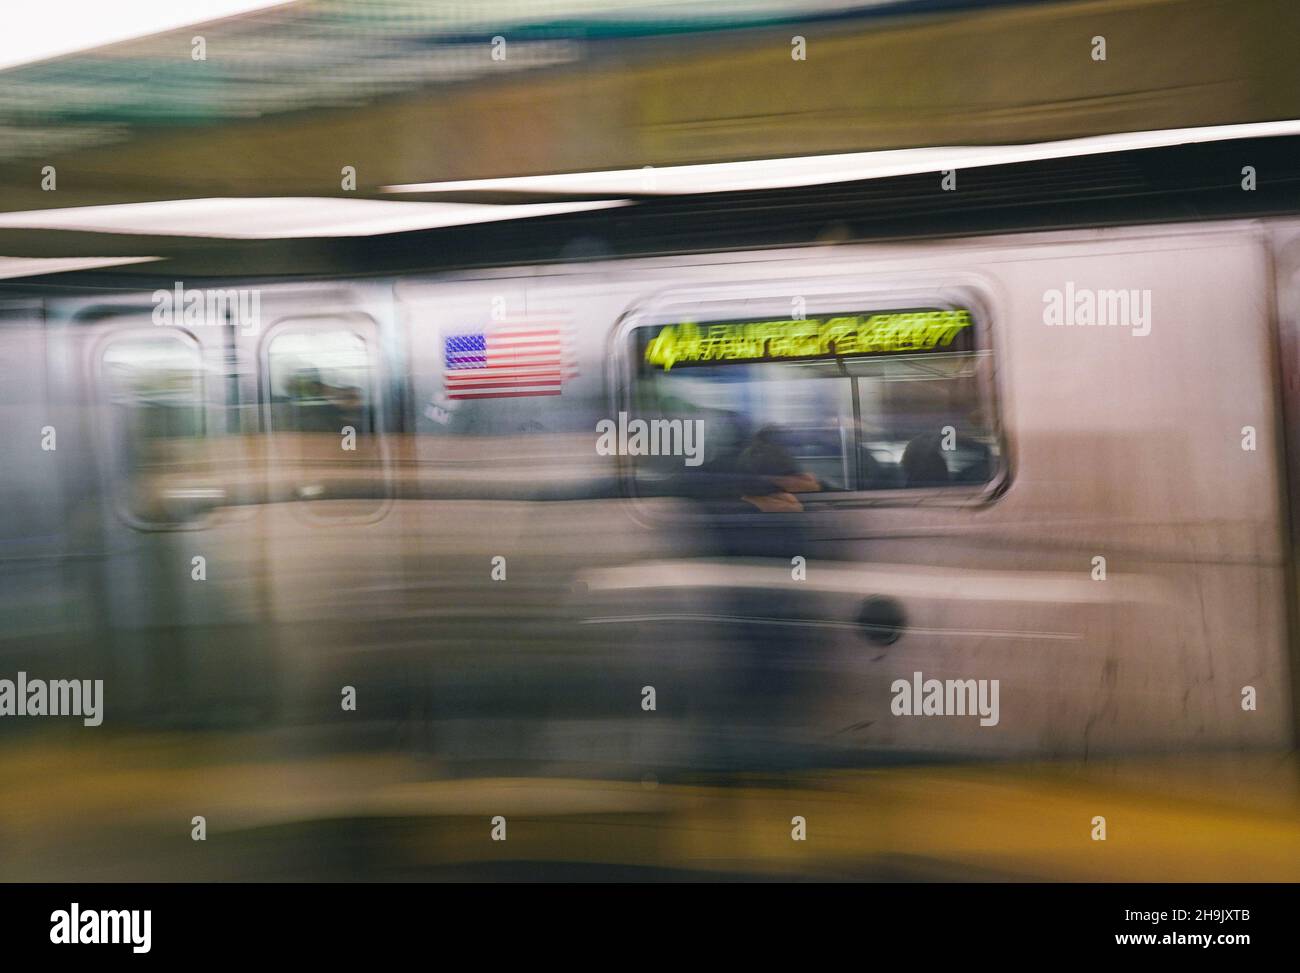 Un'immagine di un treno della metropolitana a New York City. Da una serie di immagini sperimentali che utilizzano una tecnica di trasporto slow shutter e panning a New York City negli Stati Uniti. Da una serie di foto di viaggio negli Stati Uniti. Data foto: Giovedì 5 aprile 2018. Il credito fotografico dovrebbe essere: Richard Grey/EMPICS Foto Stock